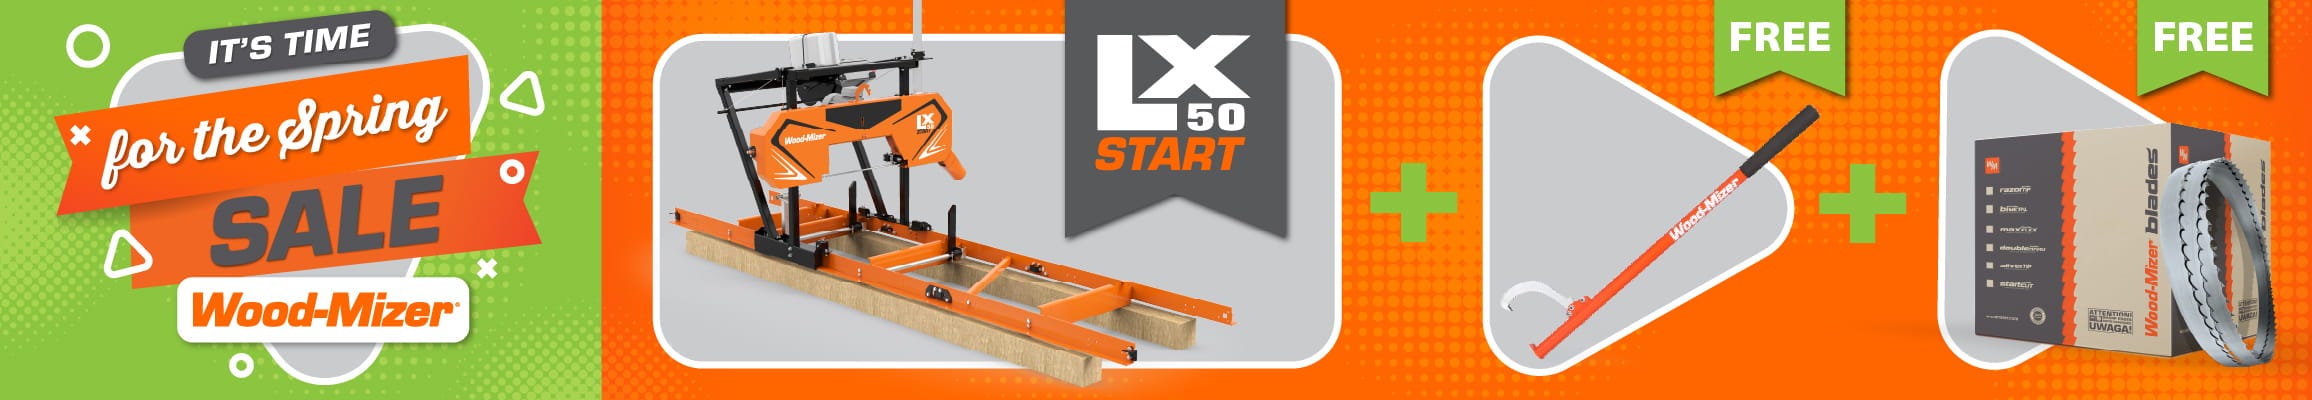 LX50START Sale